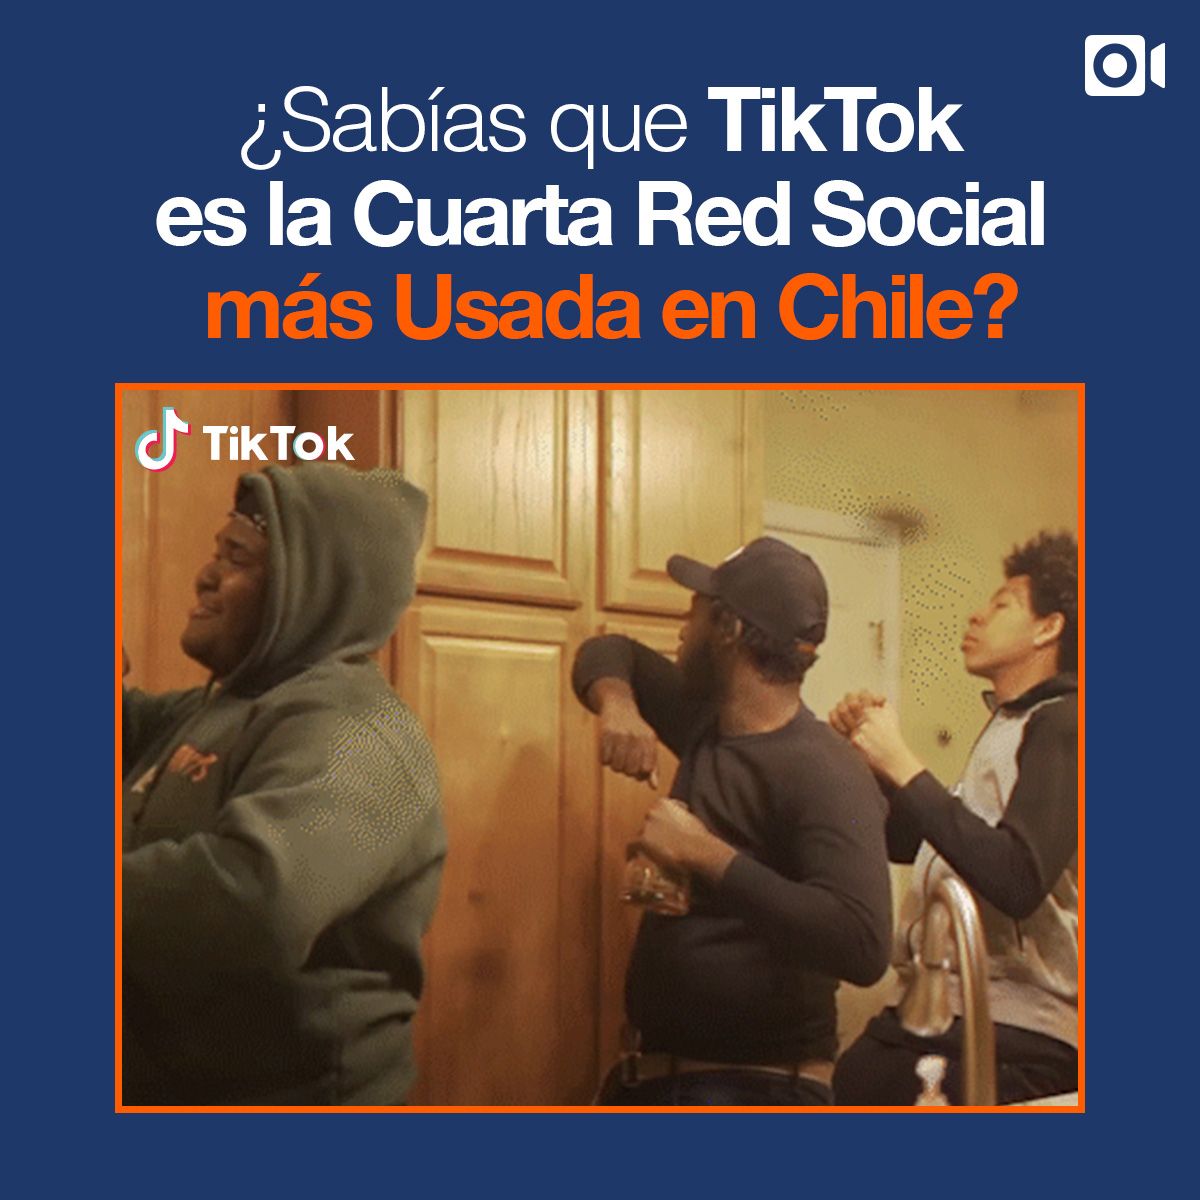 ¿Sabías que TikTok es la Cuarta Red Social más Usada en Chile?